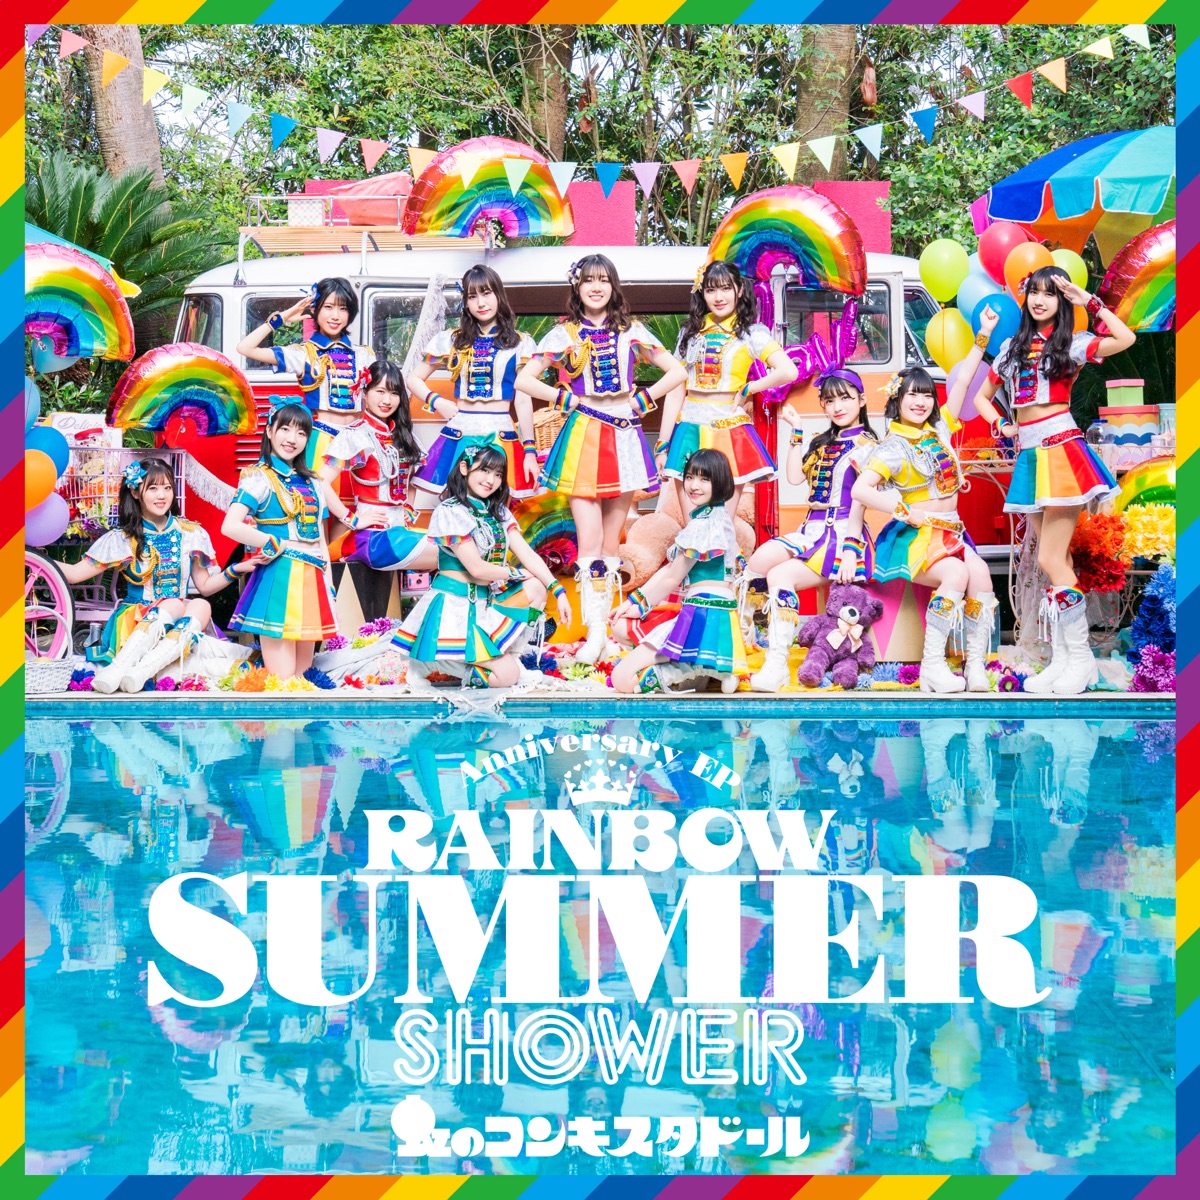 RAINBOW SUMMER SHOWER - 虹のコンキスタドールのアルバム - Apple Music